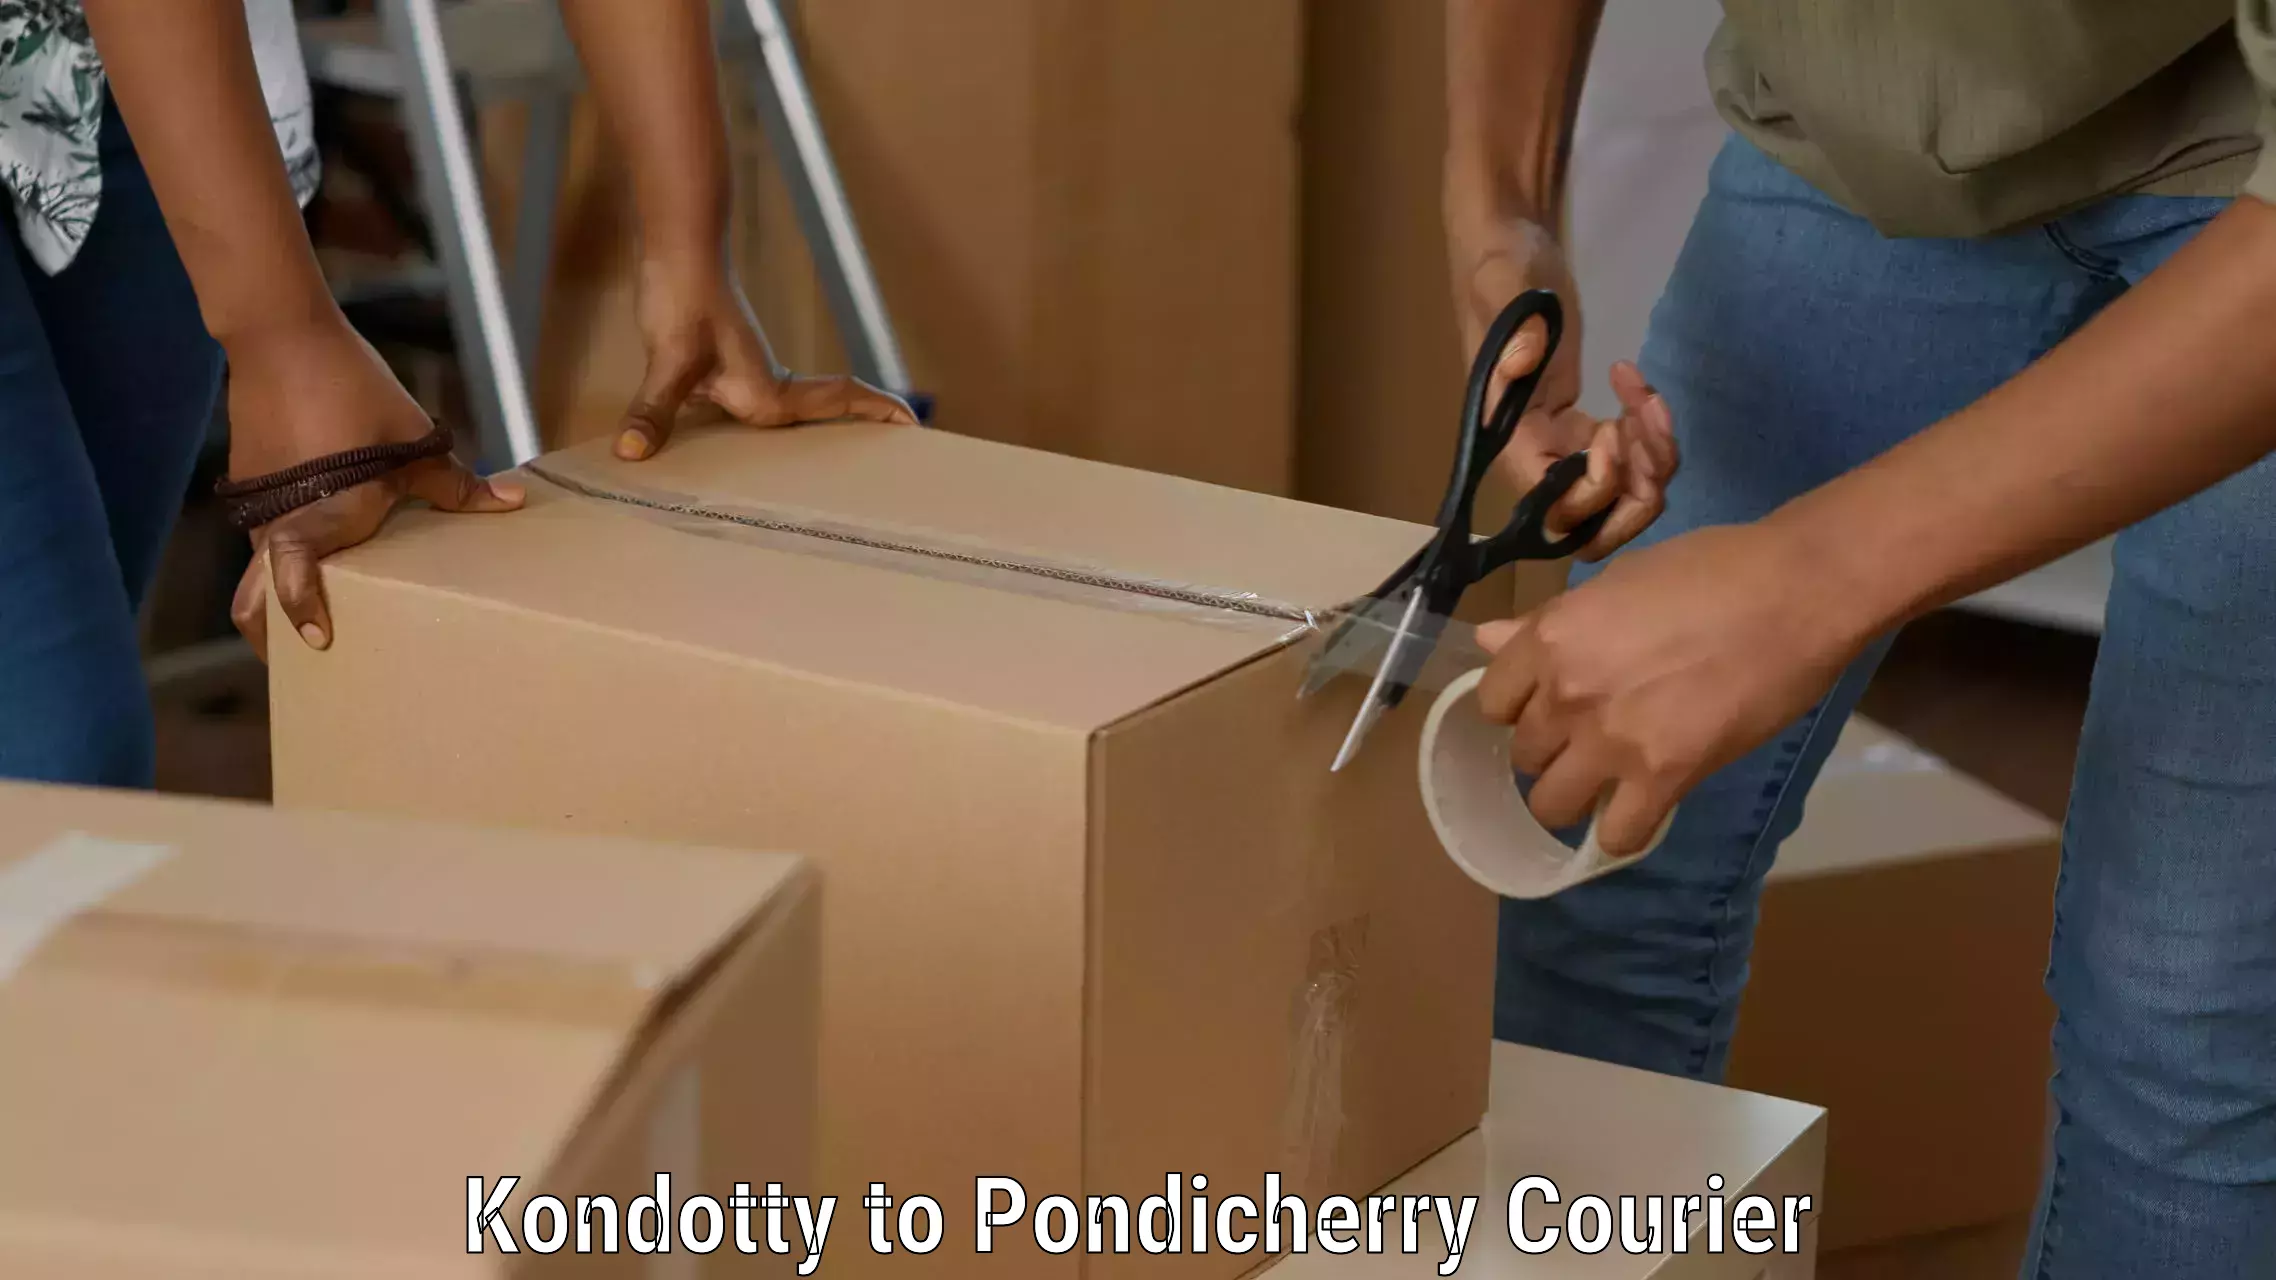 Nationwide delivery network Kondotty to Pondicherry University